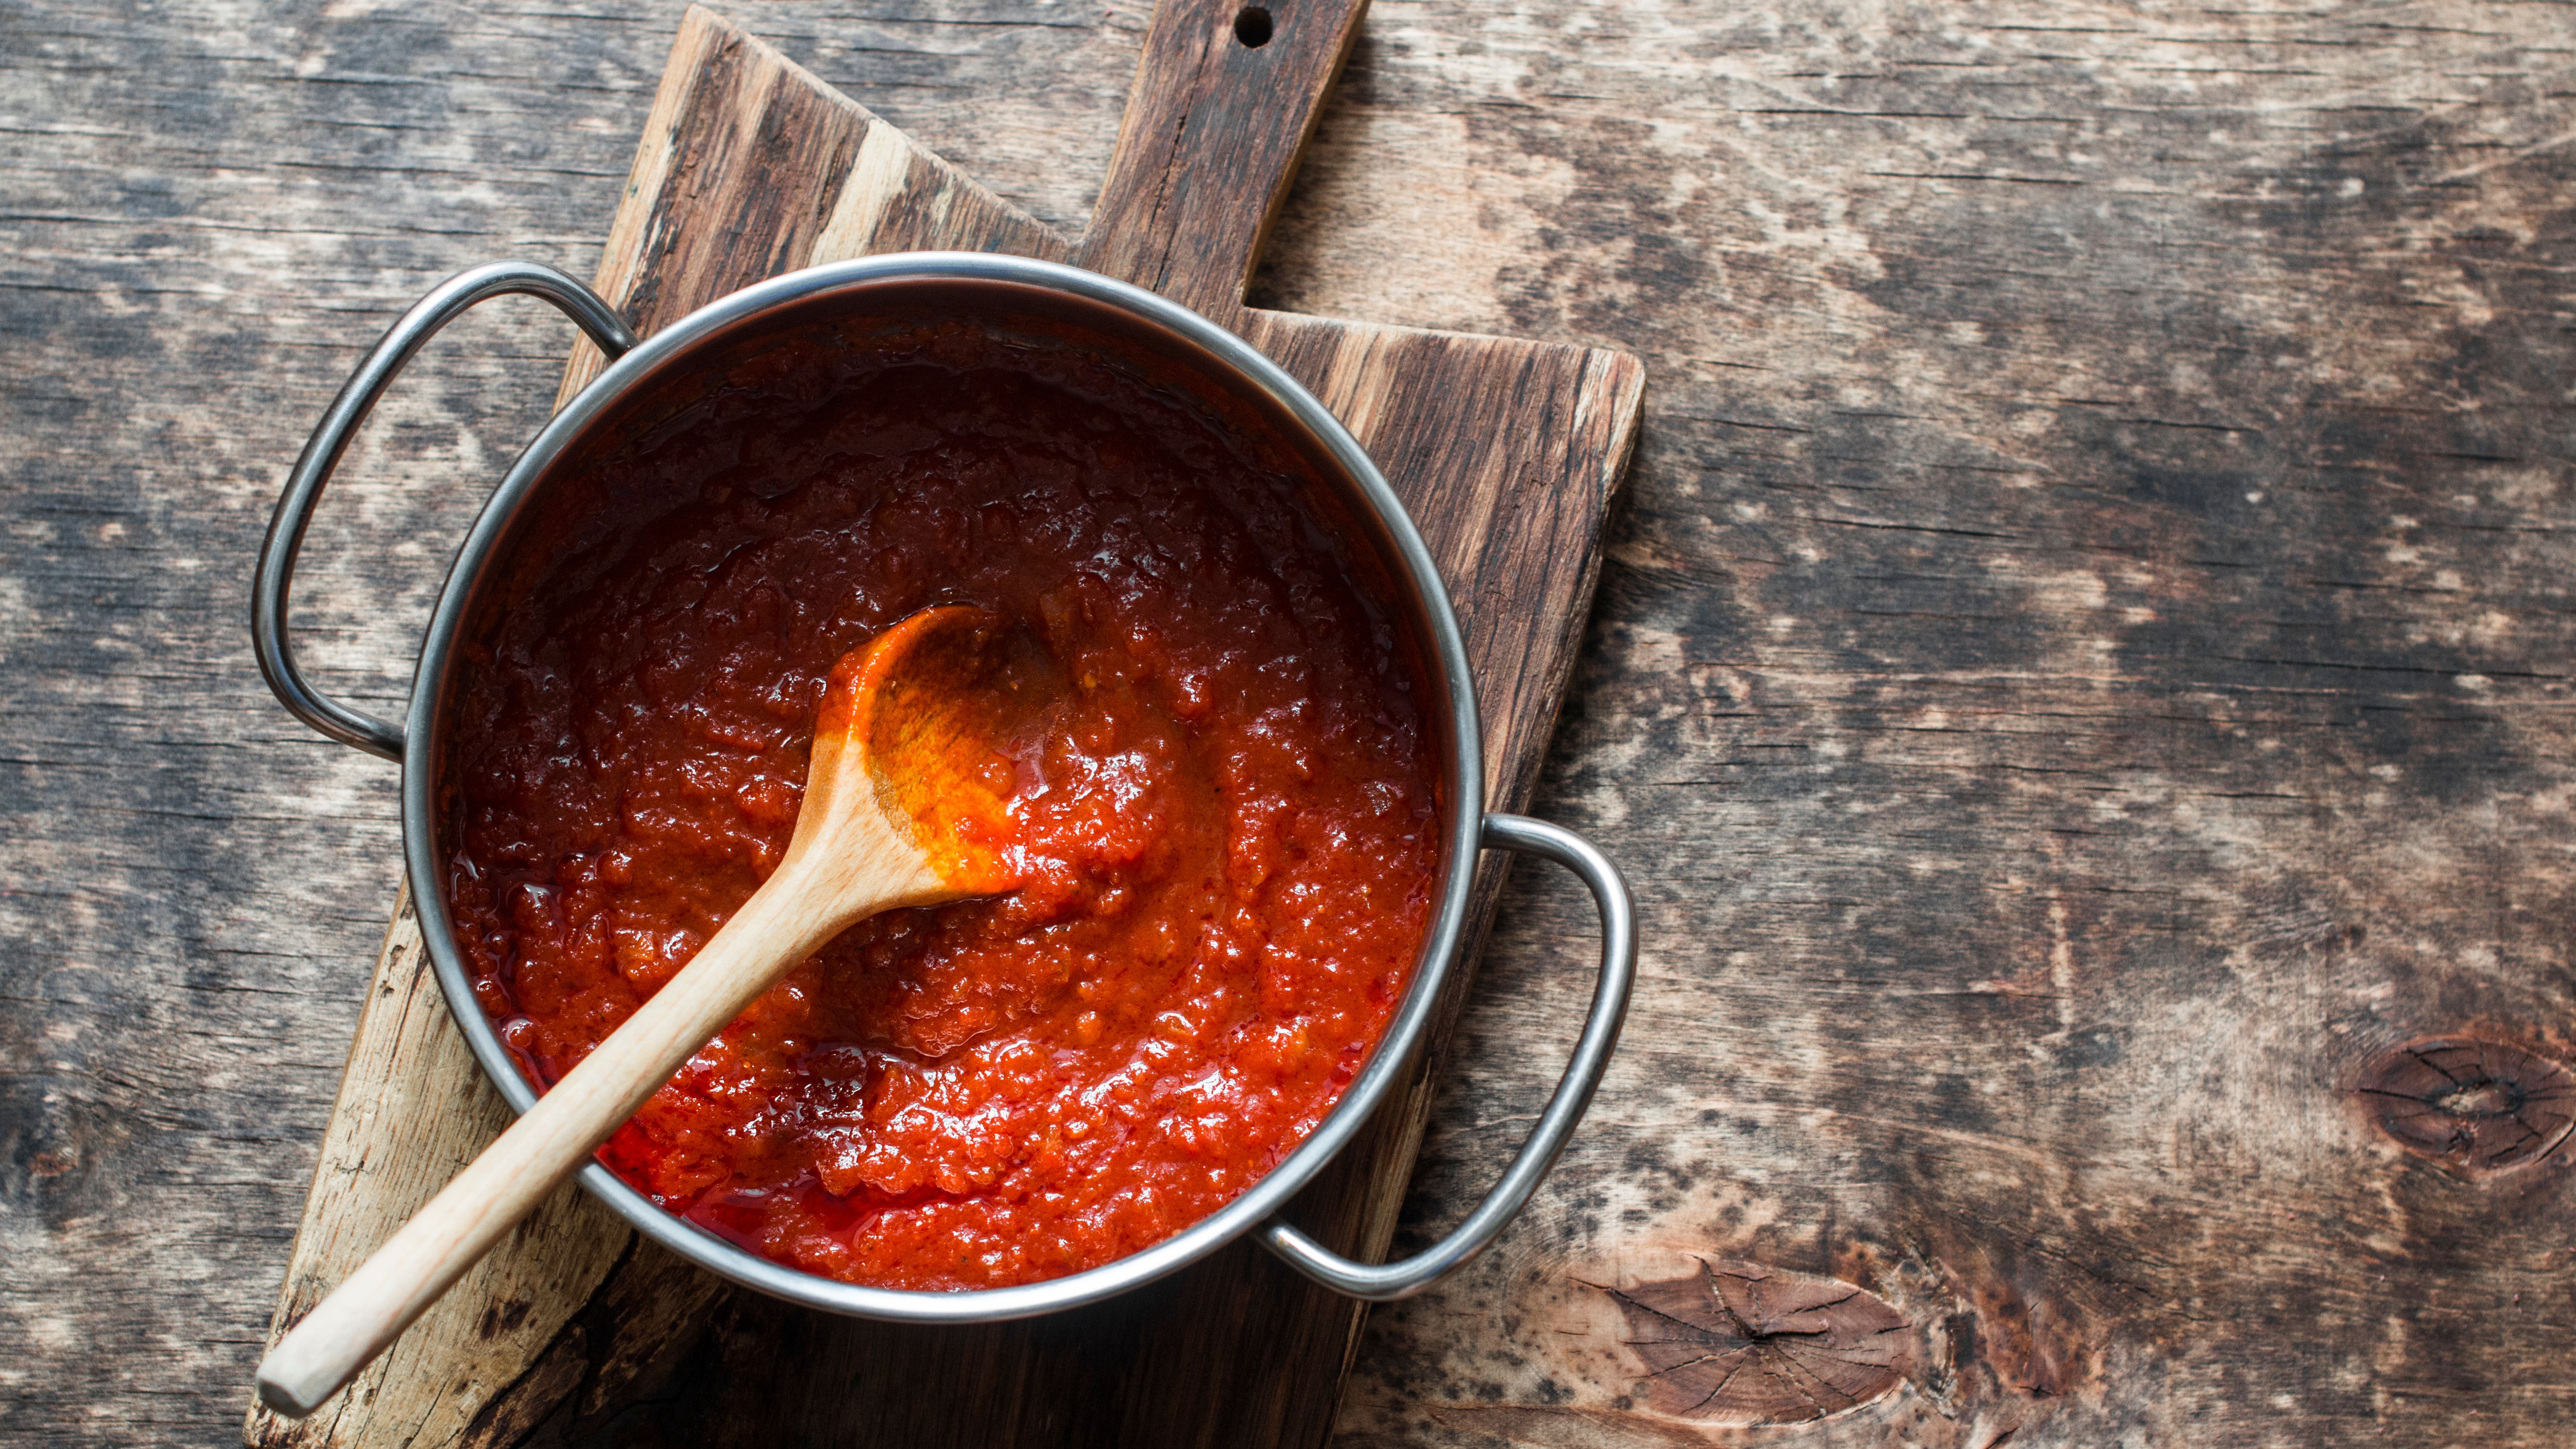 Comment bien choisir sa sauce tomate ? - Le Parisien